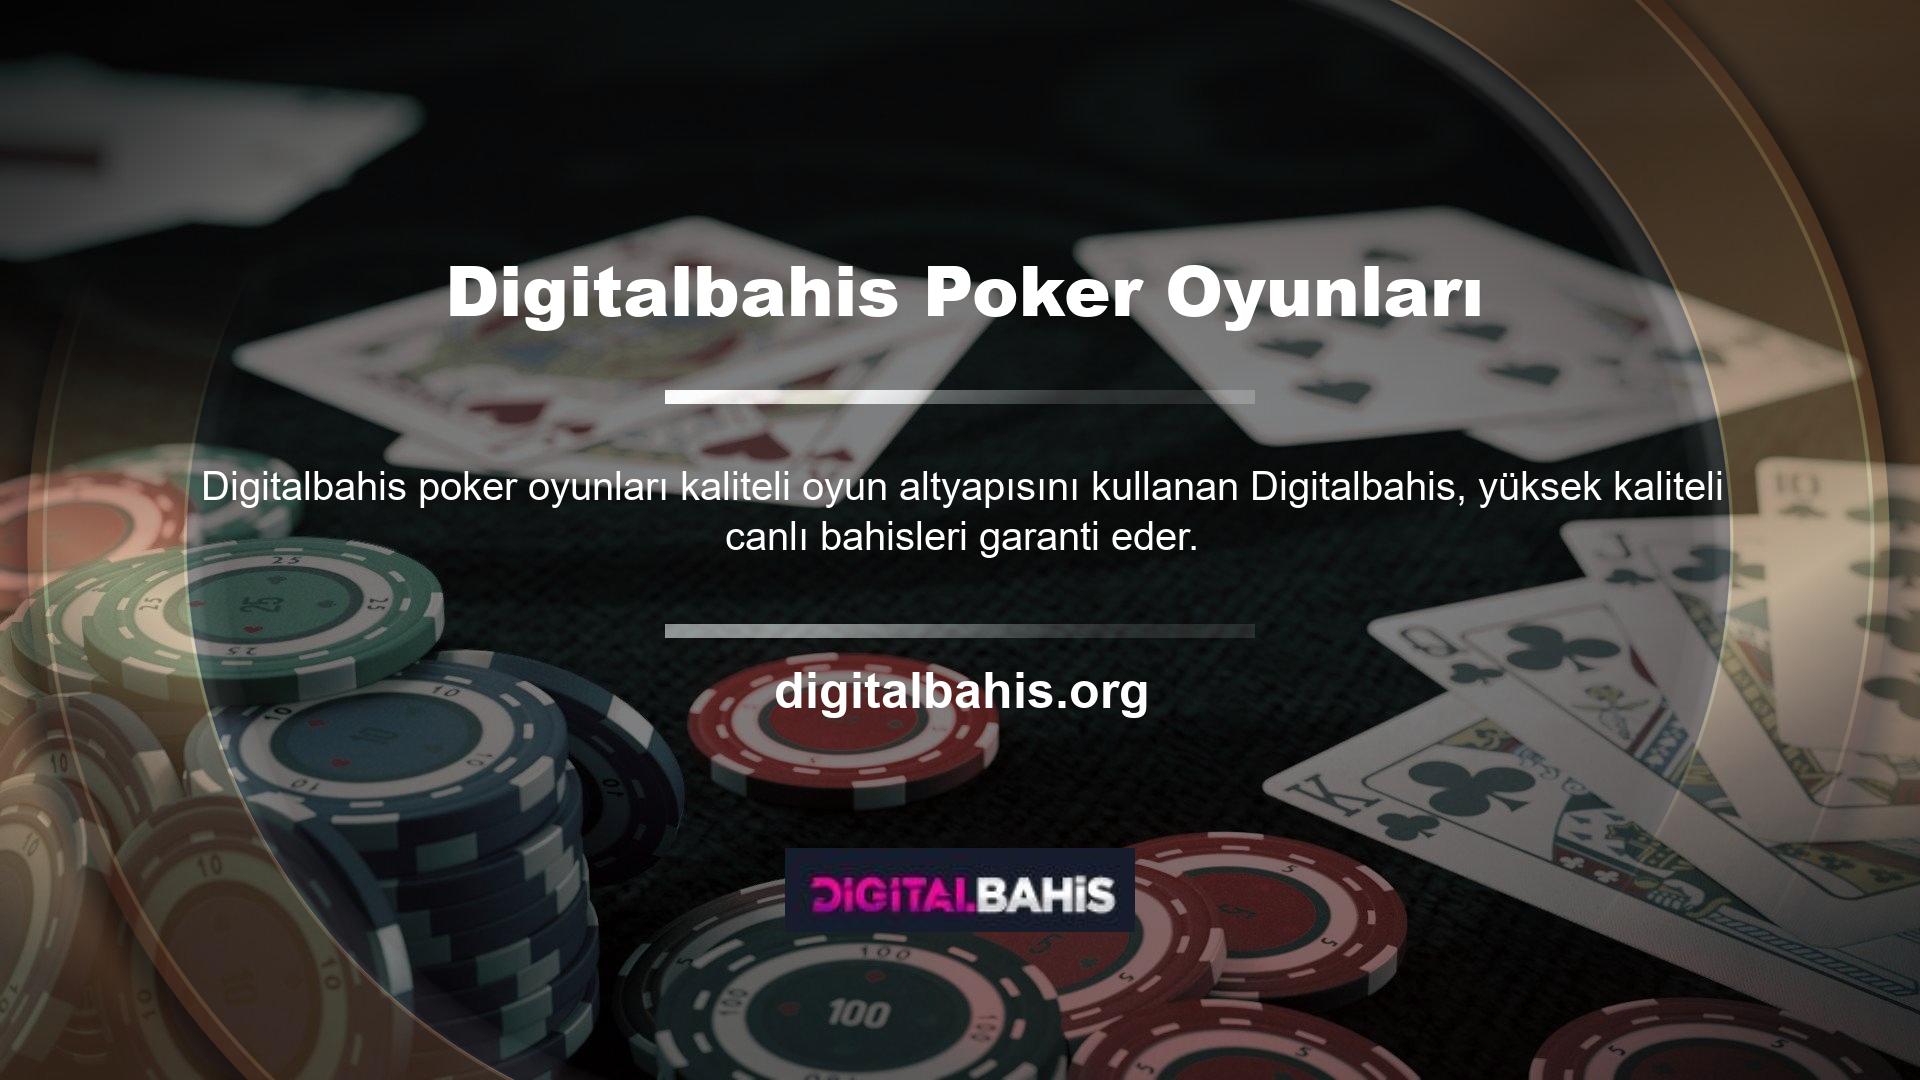 Poker uygulaması Turkish Hold'em, Open Poker, Texas Hold'emmings, Omaha Poker ve Omaha Hi Lo, Tavla ve Okey gibi çeşitli sporlar sunar